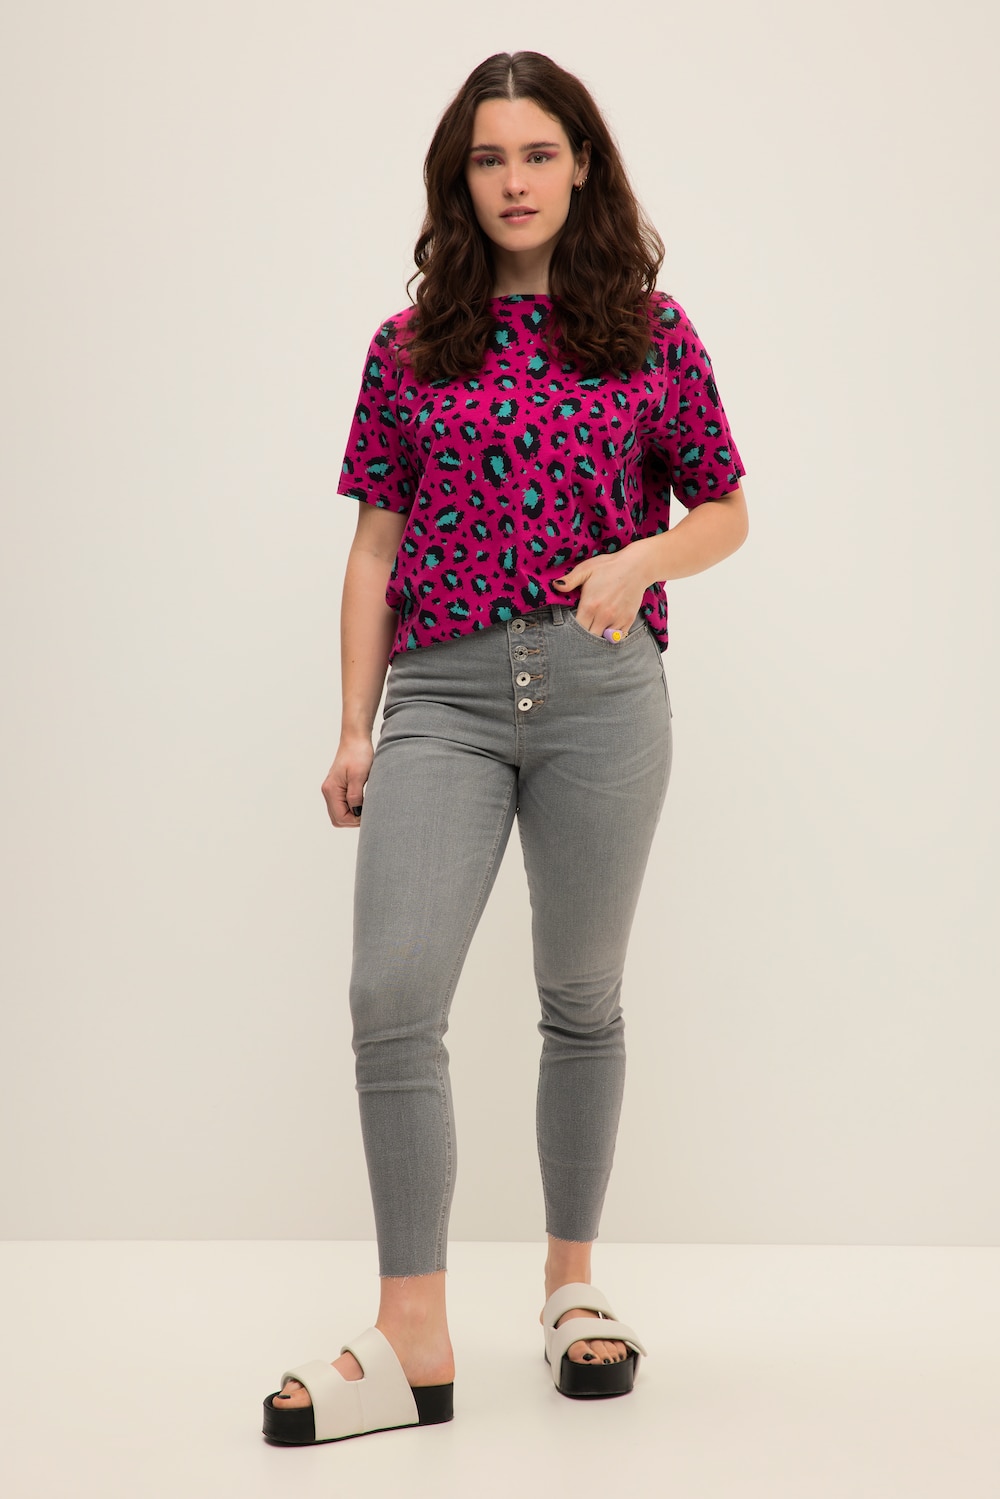 Grote Maten Skinny jeans, Dames, grijs, Maat: 56, Katoen/Polyester, Studio Untold